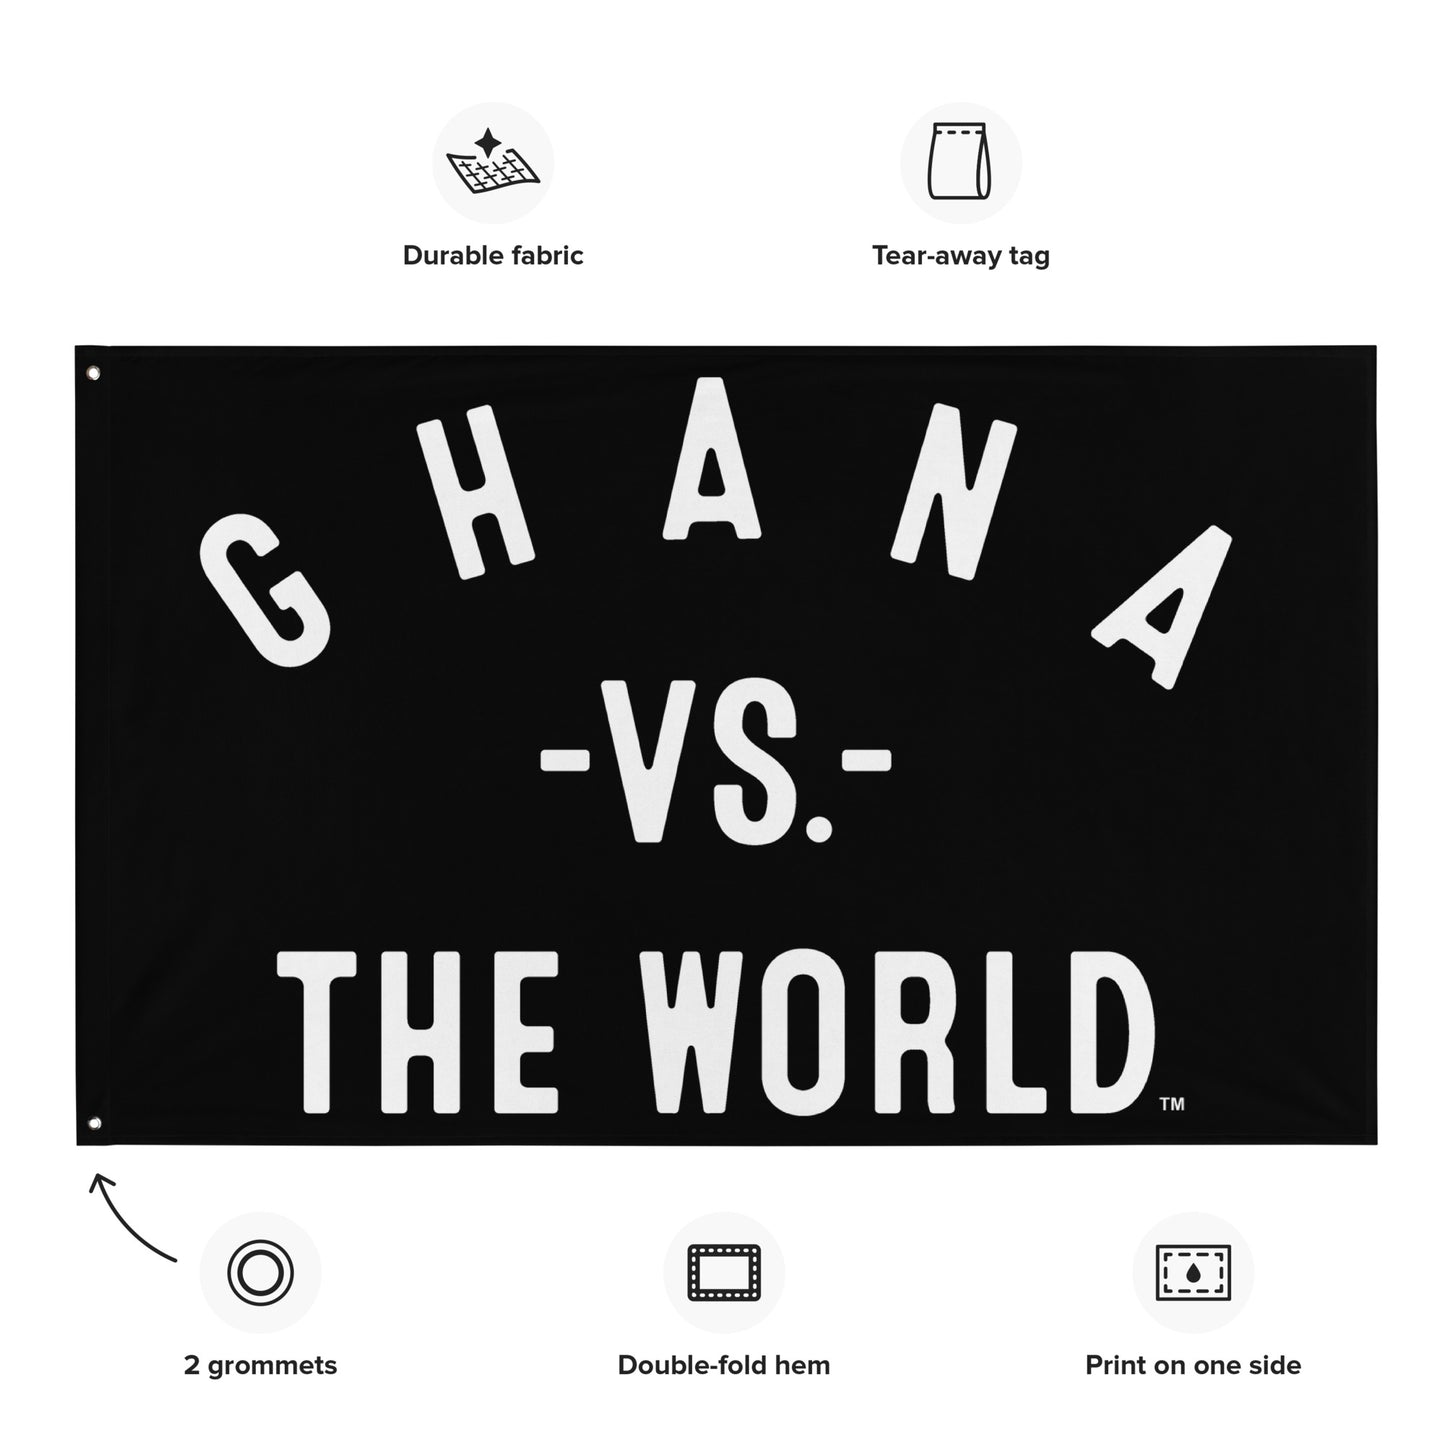 GHANA Vs The World Flag